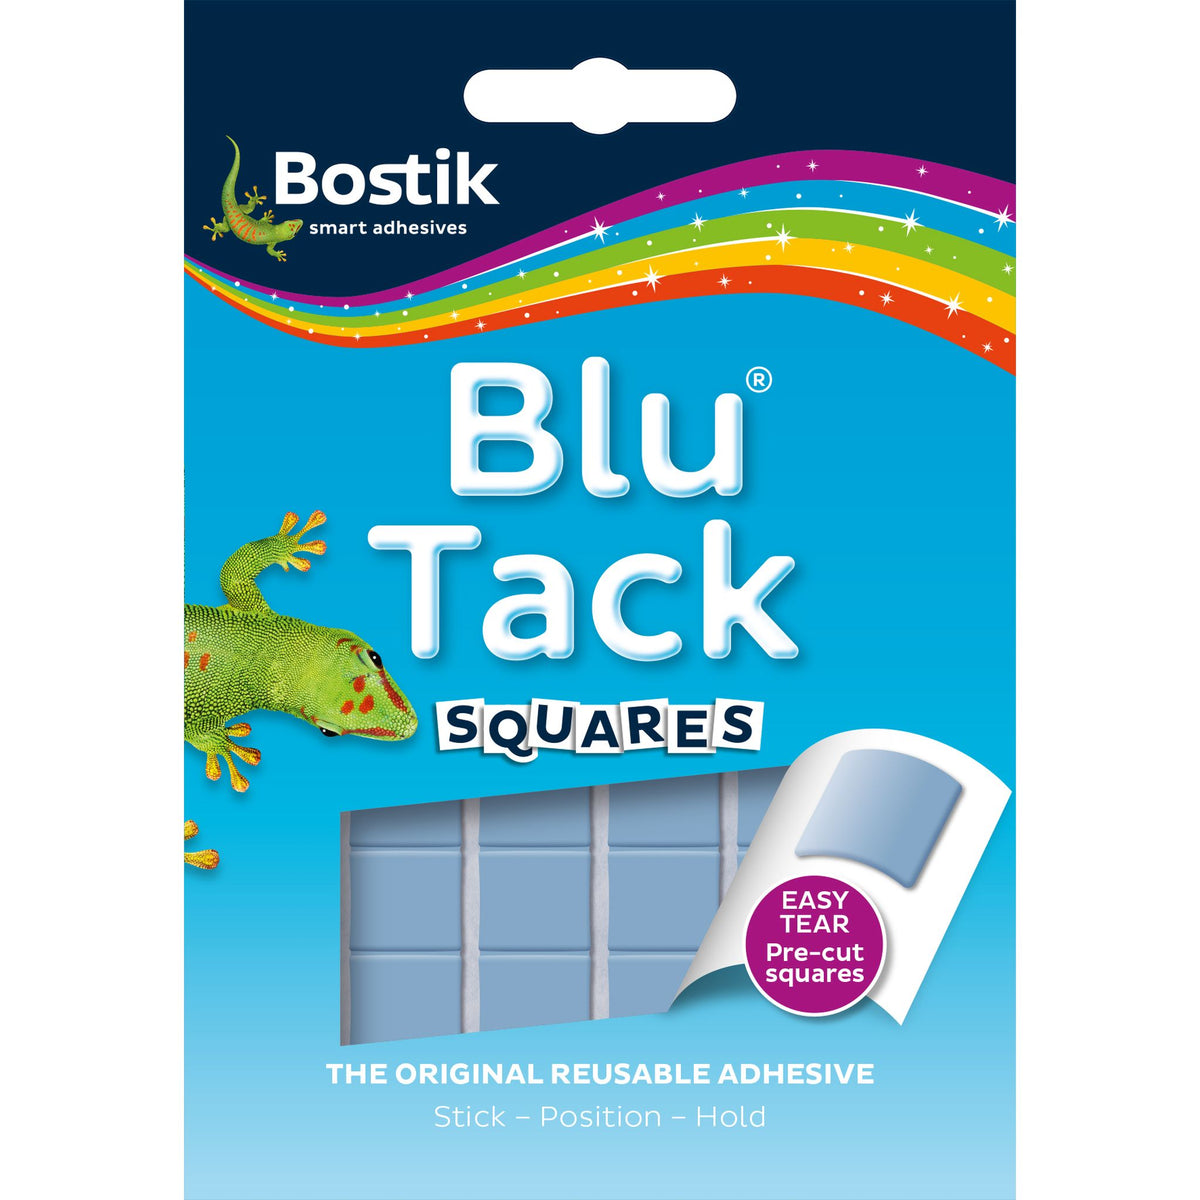 Bostik Blu Tack Squares